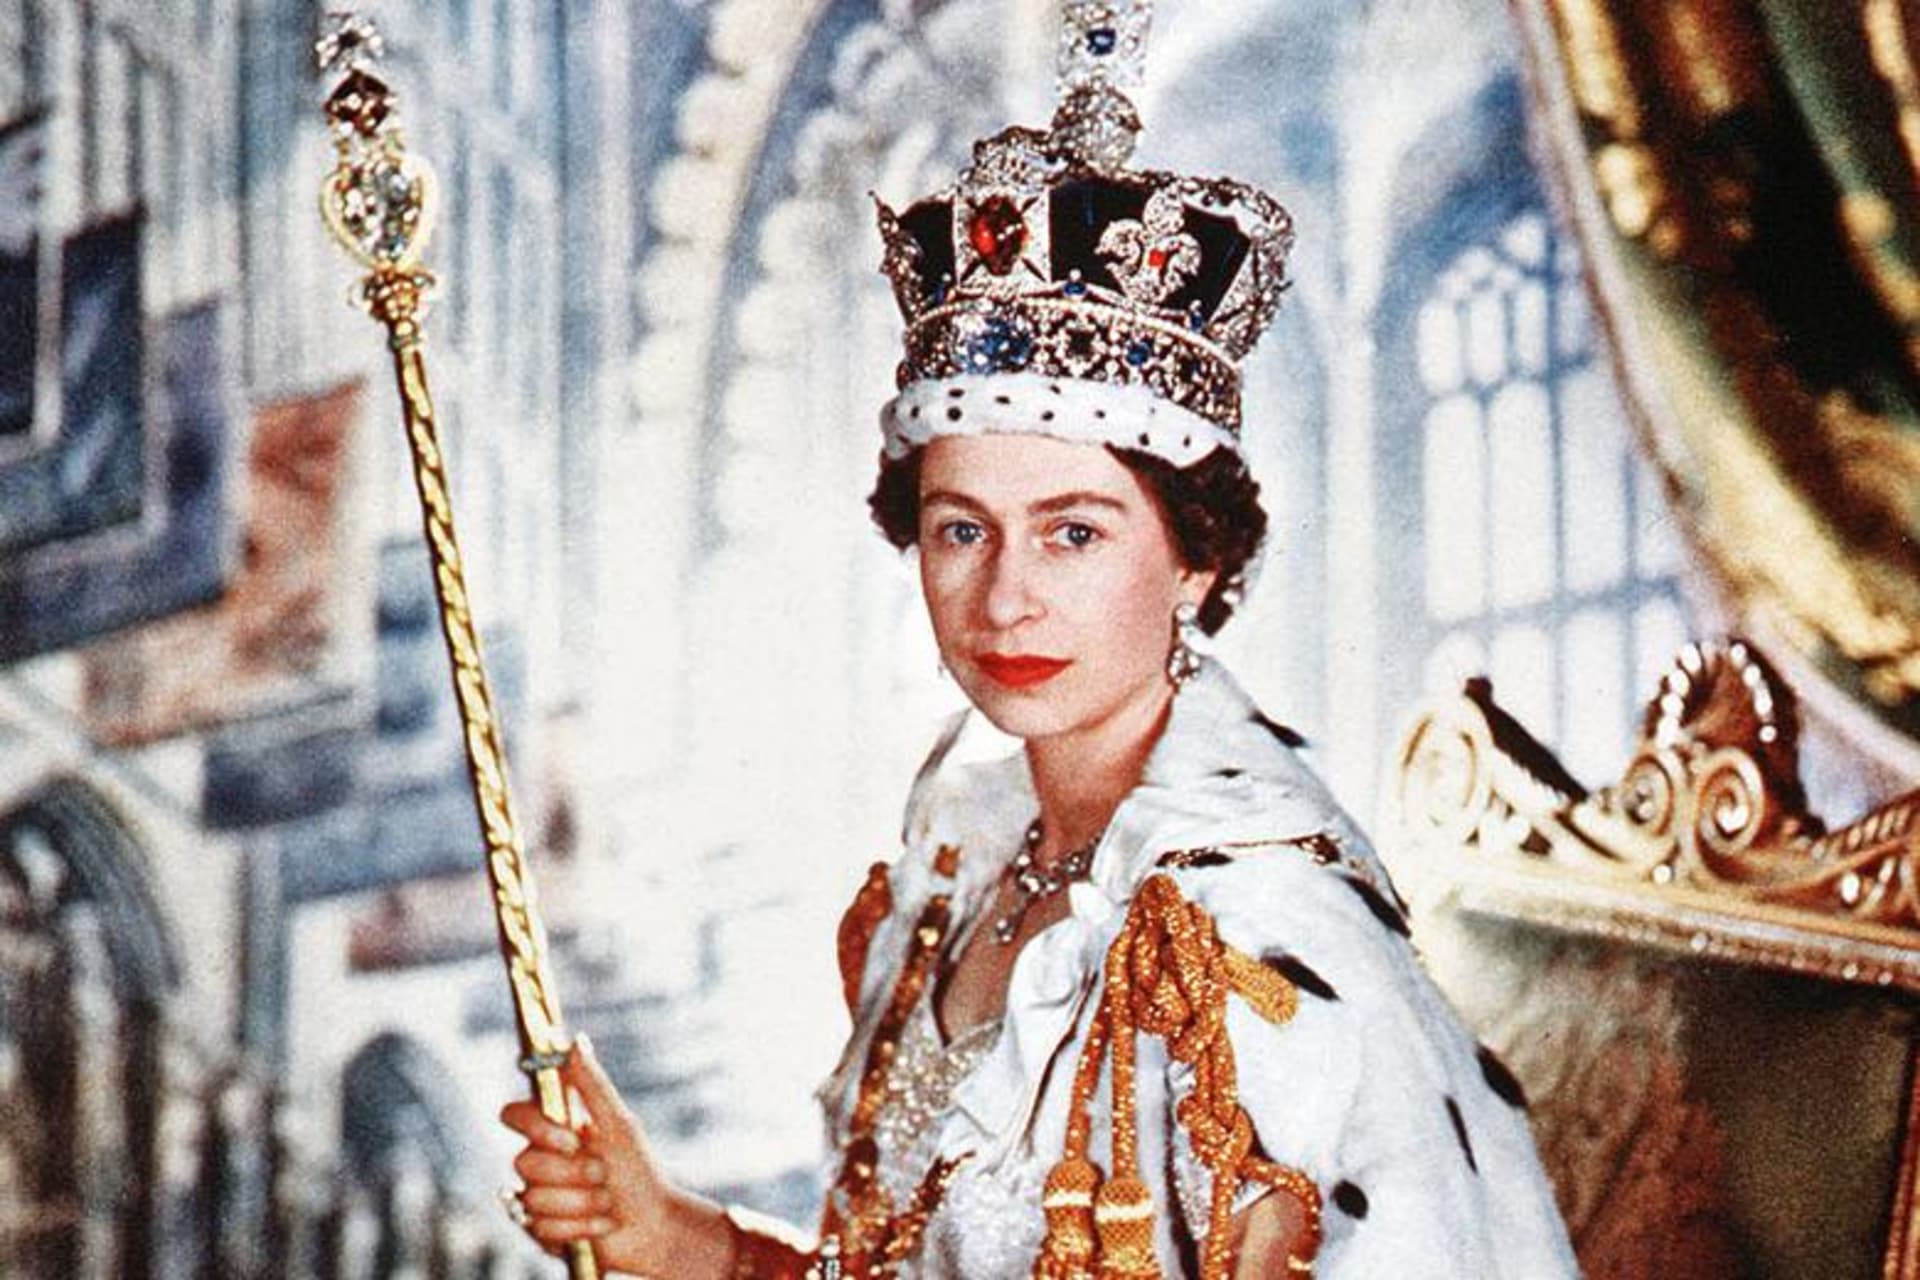 Alžběta II. ze své korunovace odcházela s Korunou britského impéria a Panovnickým žezlem s křížem. Karel III. obdrží stejné korunovační klenoty.